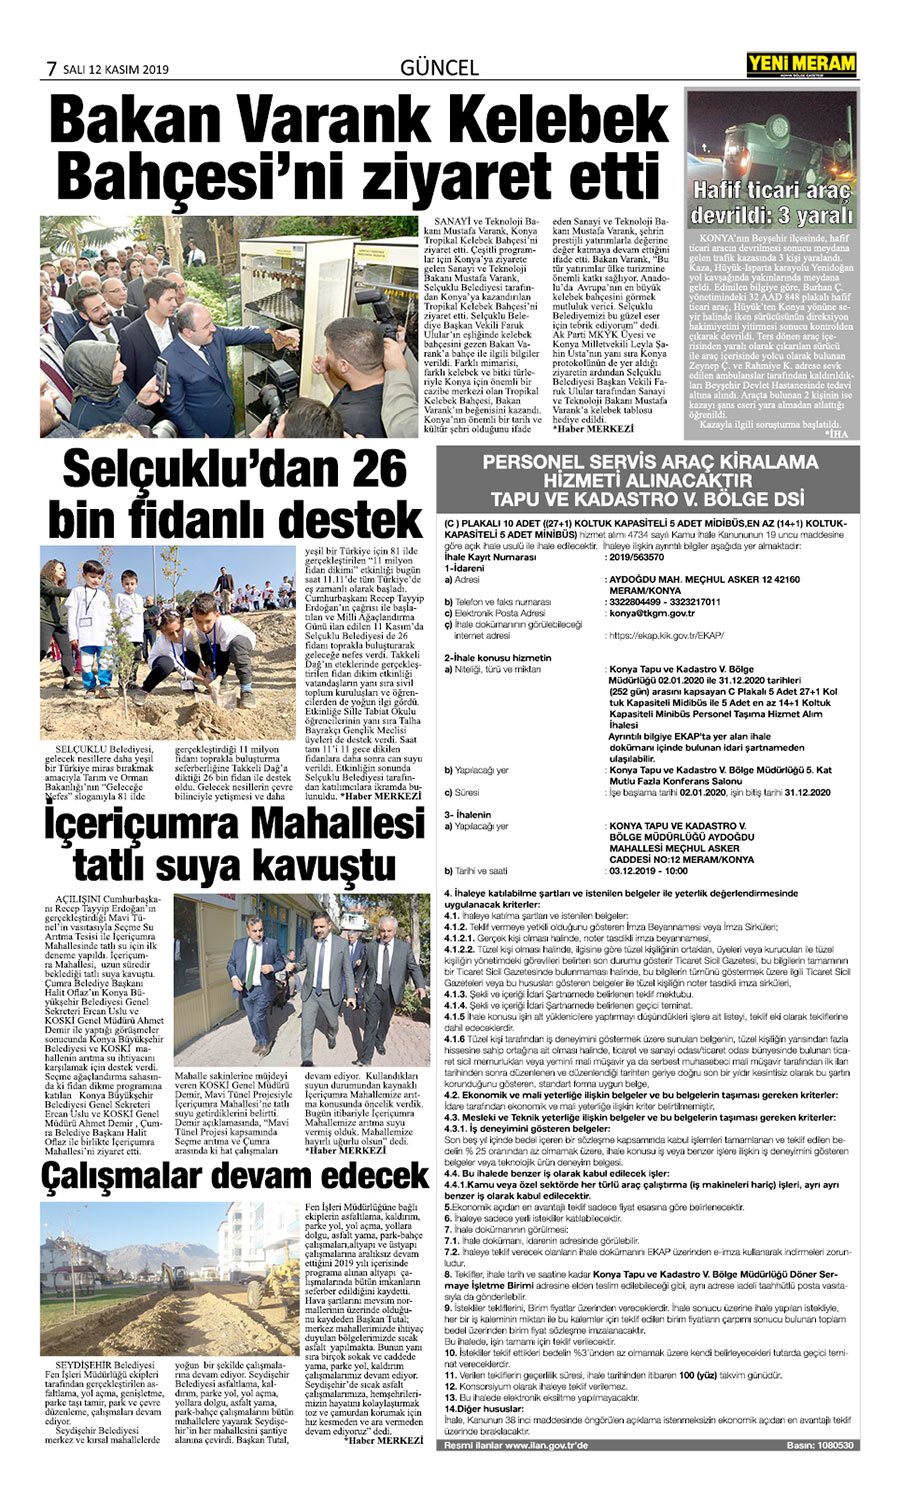 12 Kasım 2019 Yeni Meram Gazetesi